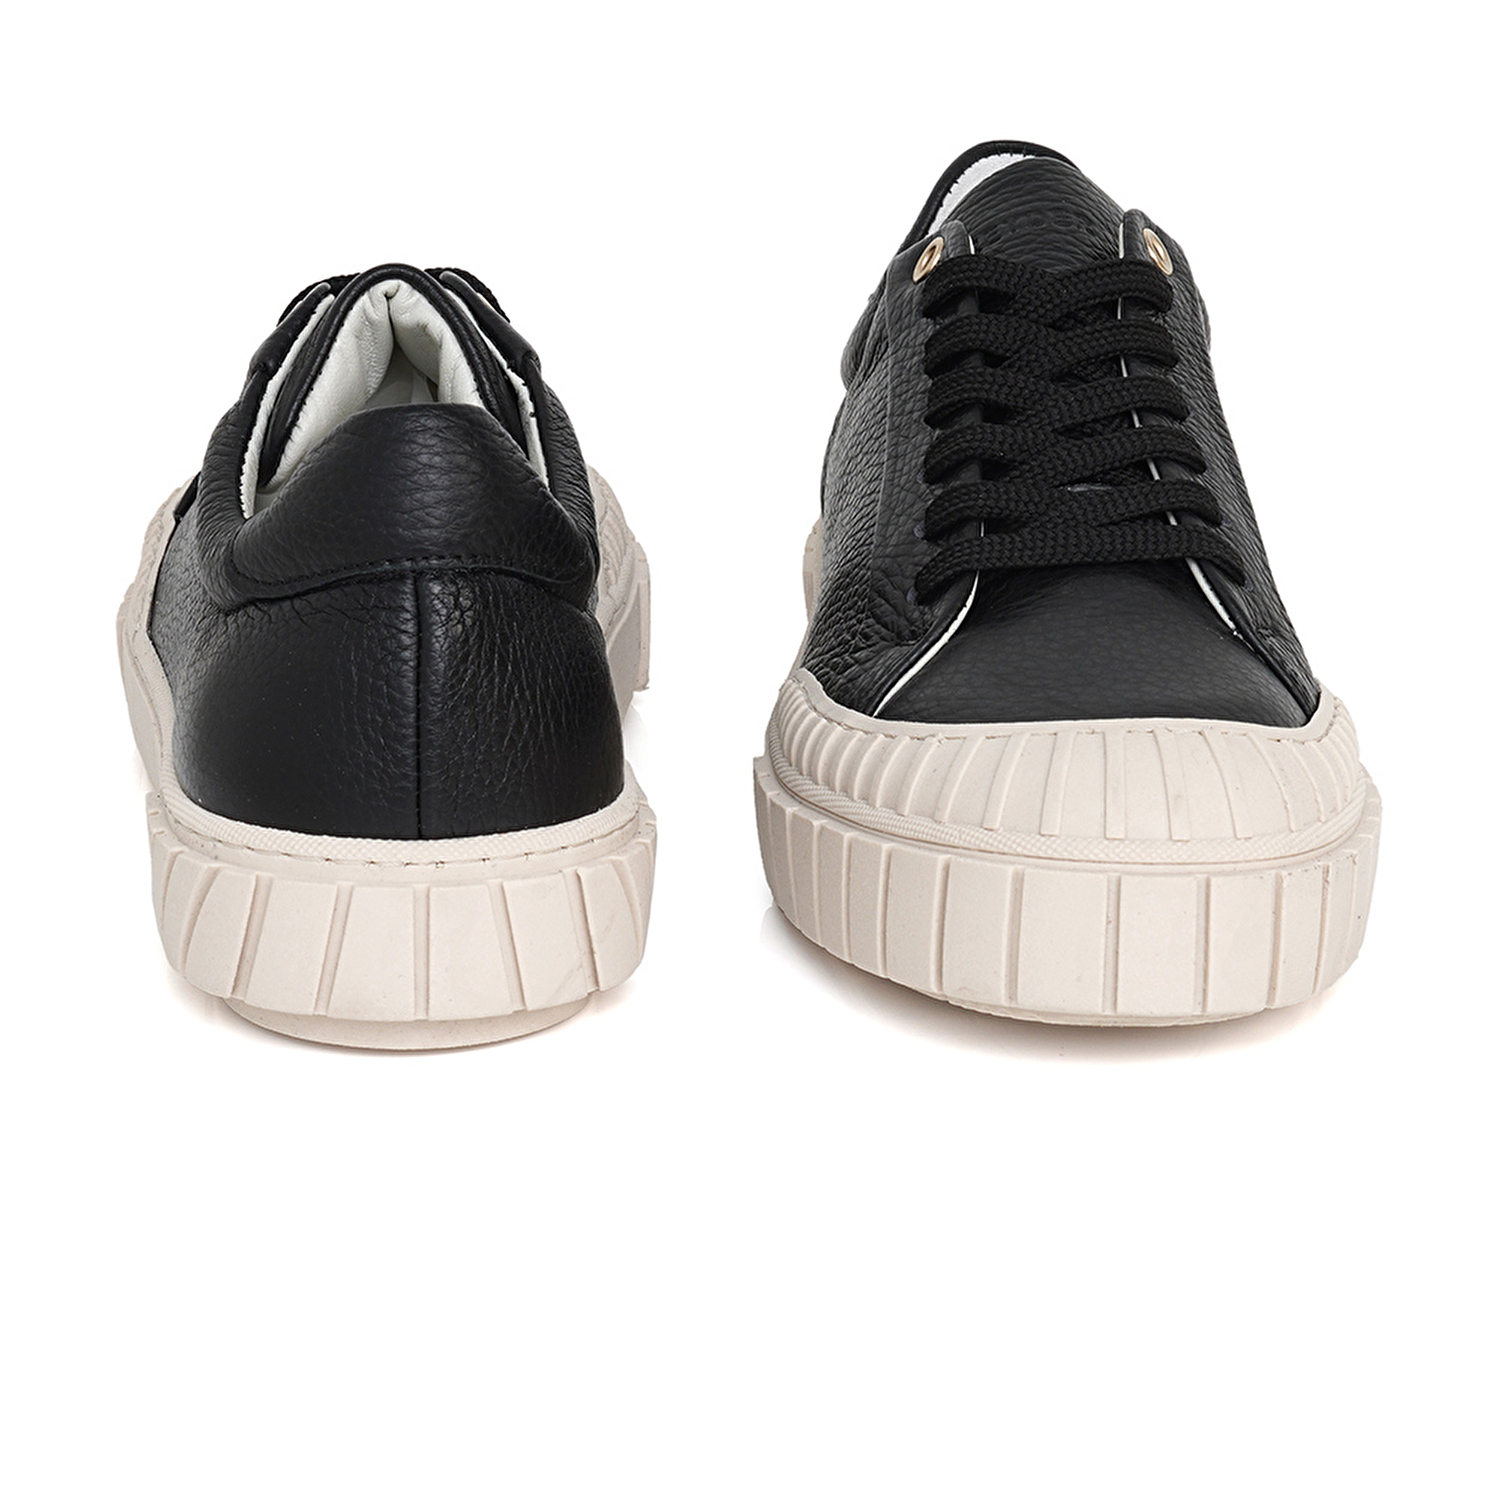 Kadın Siyah Hakiki Deri Sneaker Ayakkabı 3Y2SA50765-7